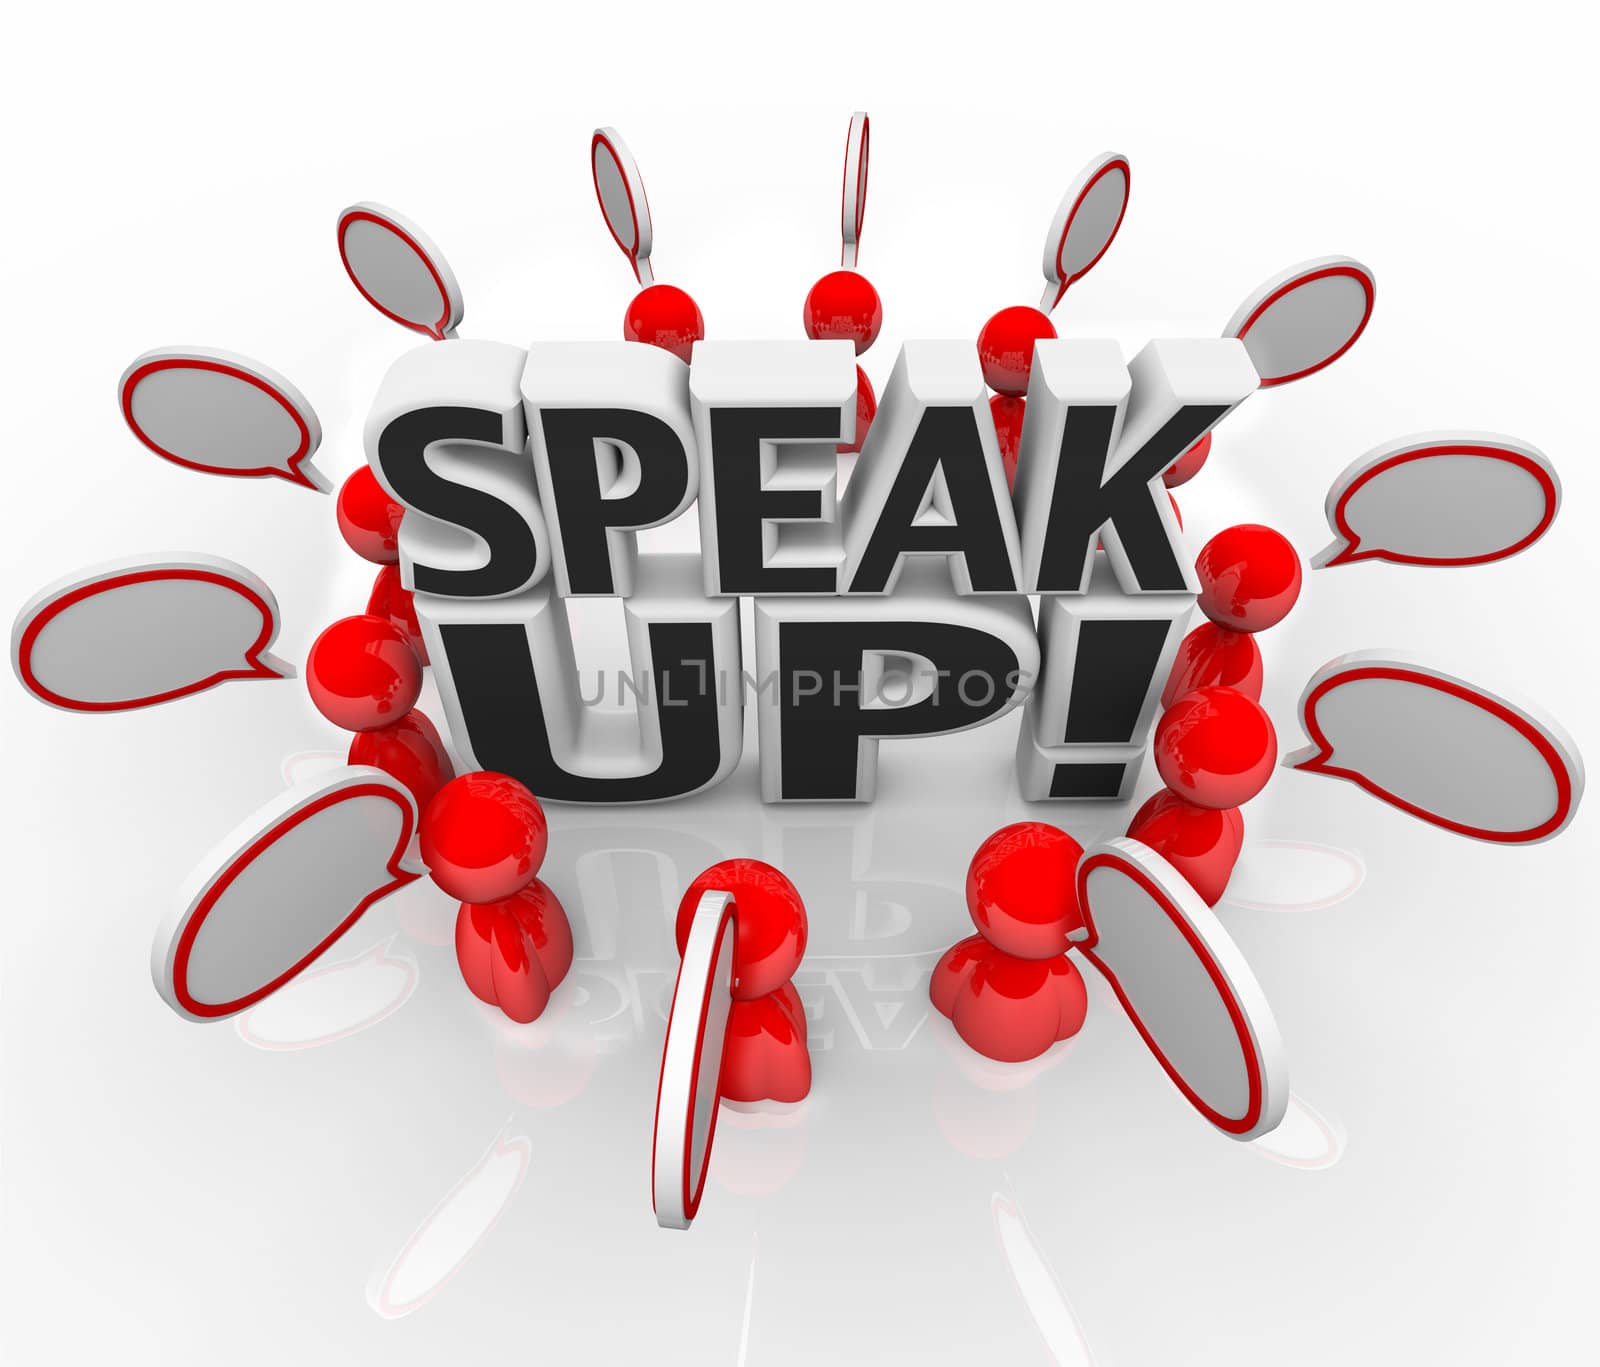 Speak Up Speech Bubble People Talking in Group by iQoncept